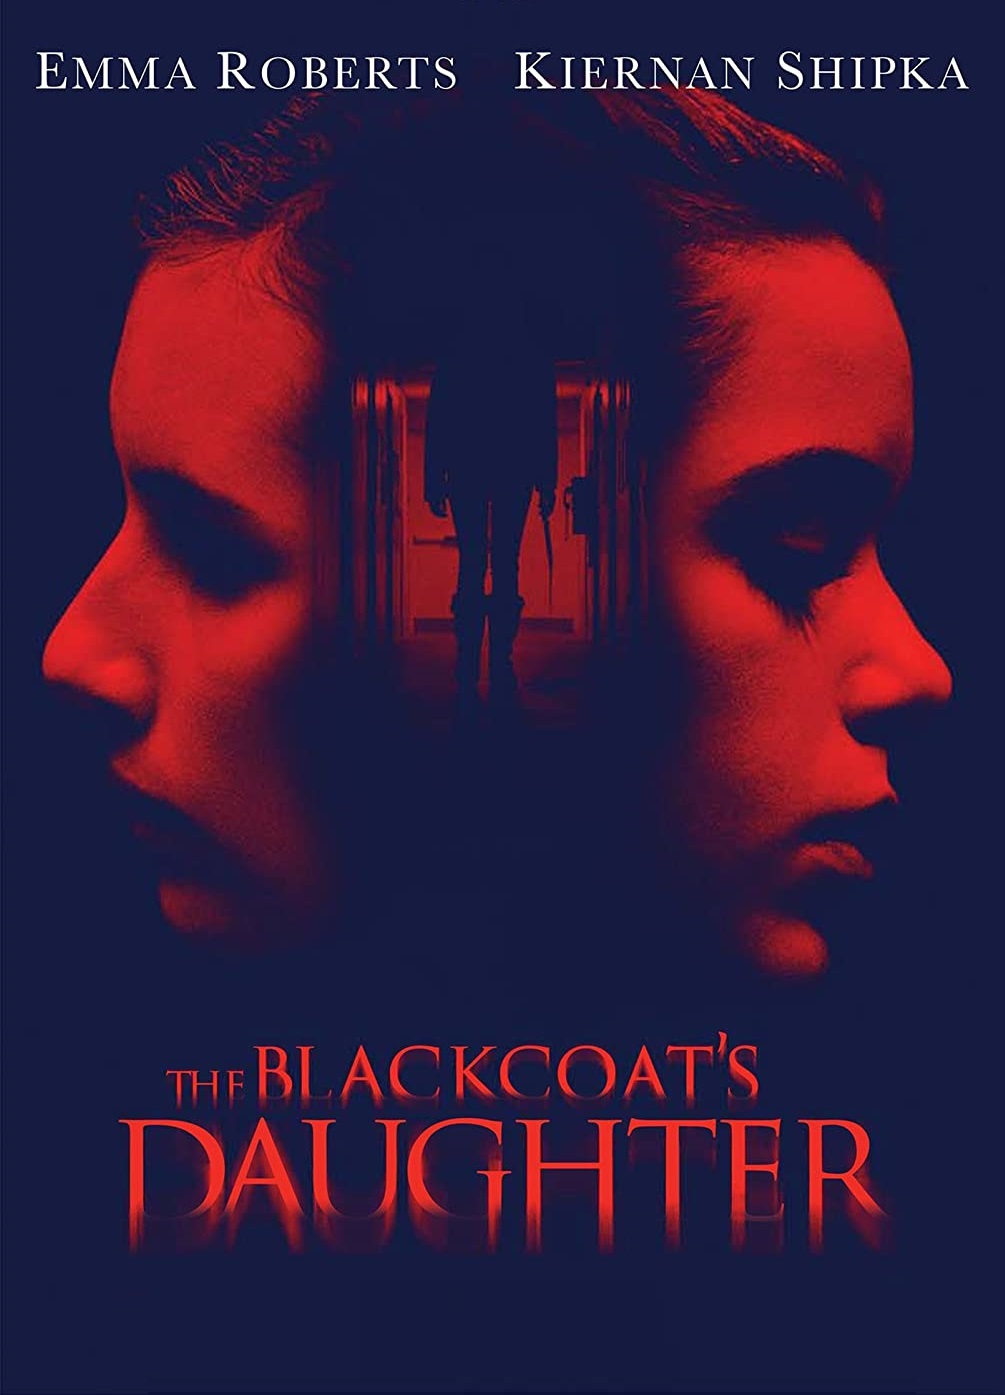 The Blackcoat’s Daughter [Sub-ITA] (2015)